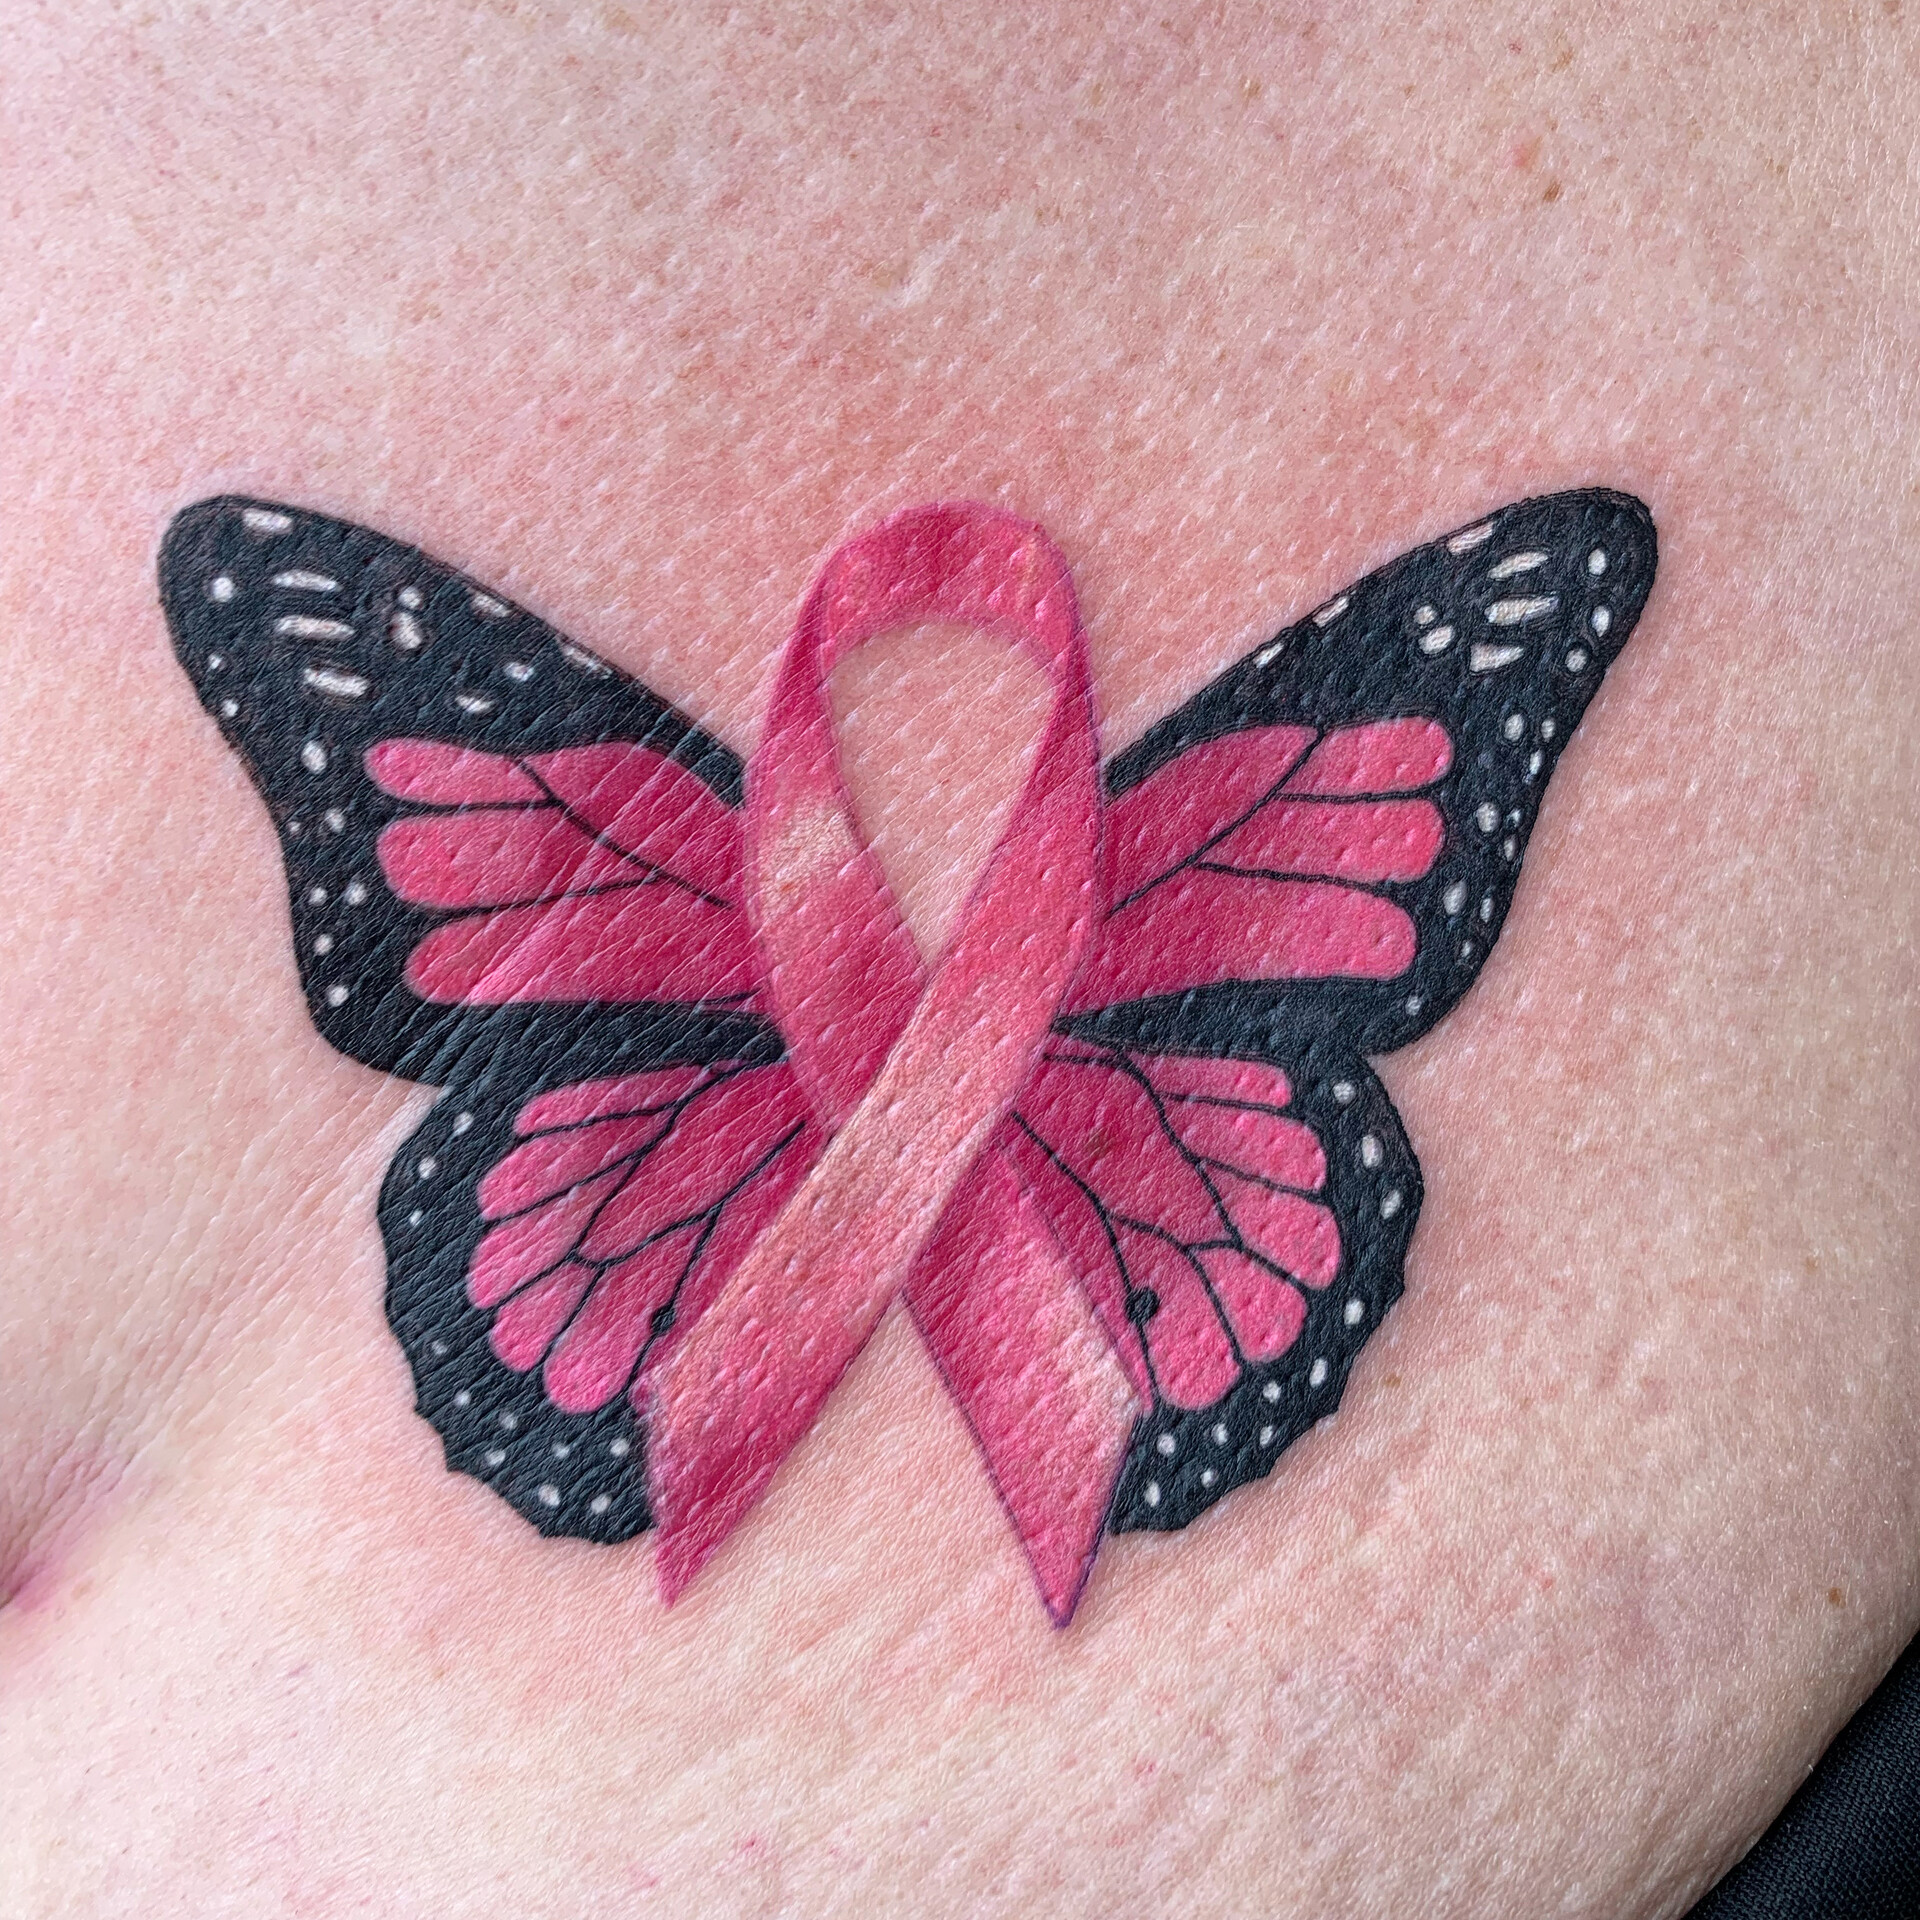 ArtStation - Breast cancer survivor tattoo